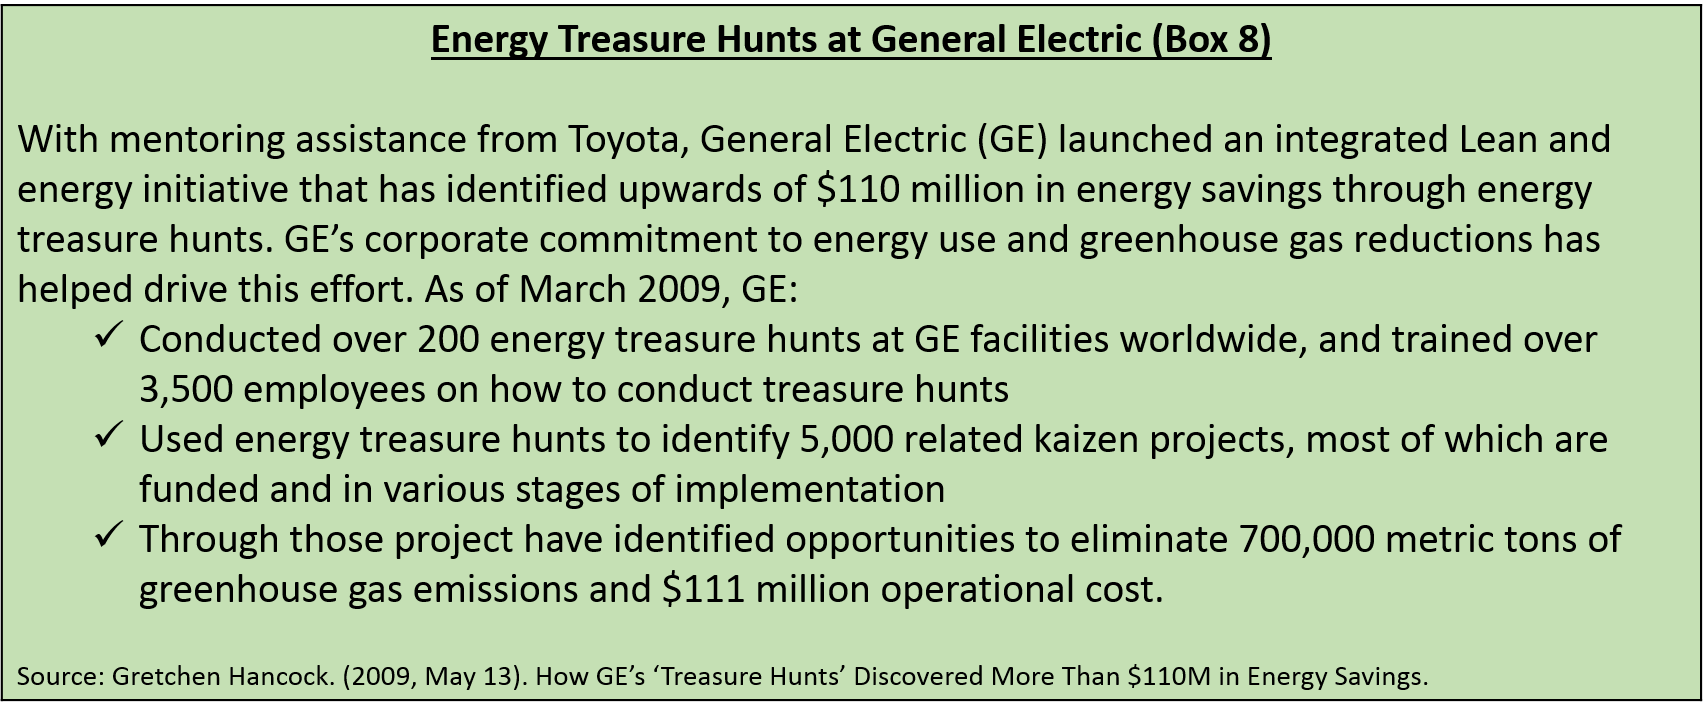 Energy Treasure Hunts at General Electric (Box 8) 